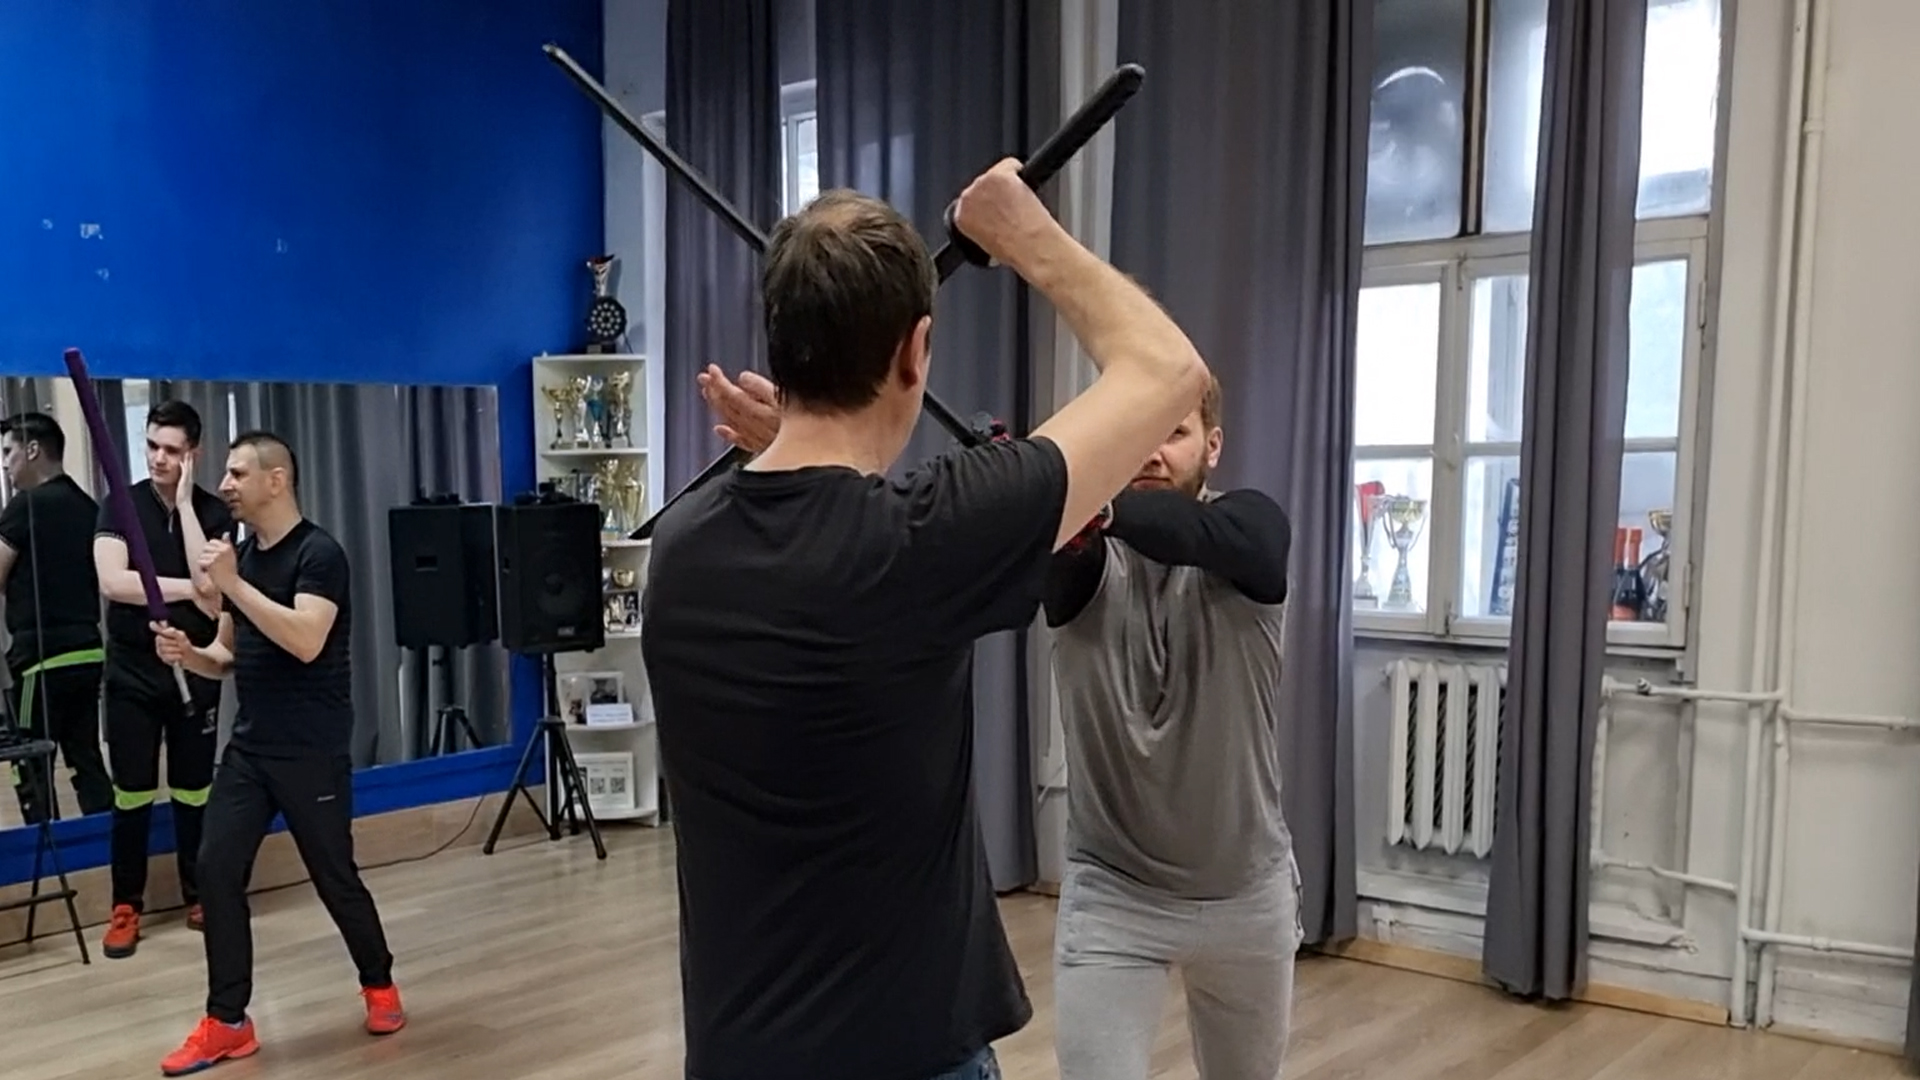 Урок фехтования катаной - приемы кендзюцу: защита мечом с жесткой фиксацией рукой  клинка за обух